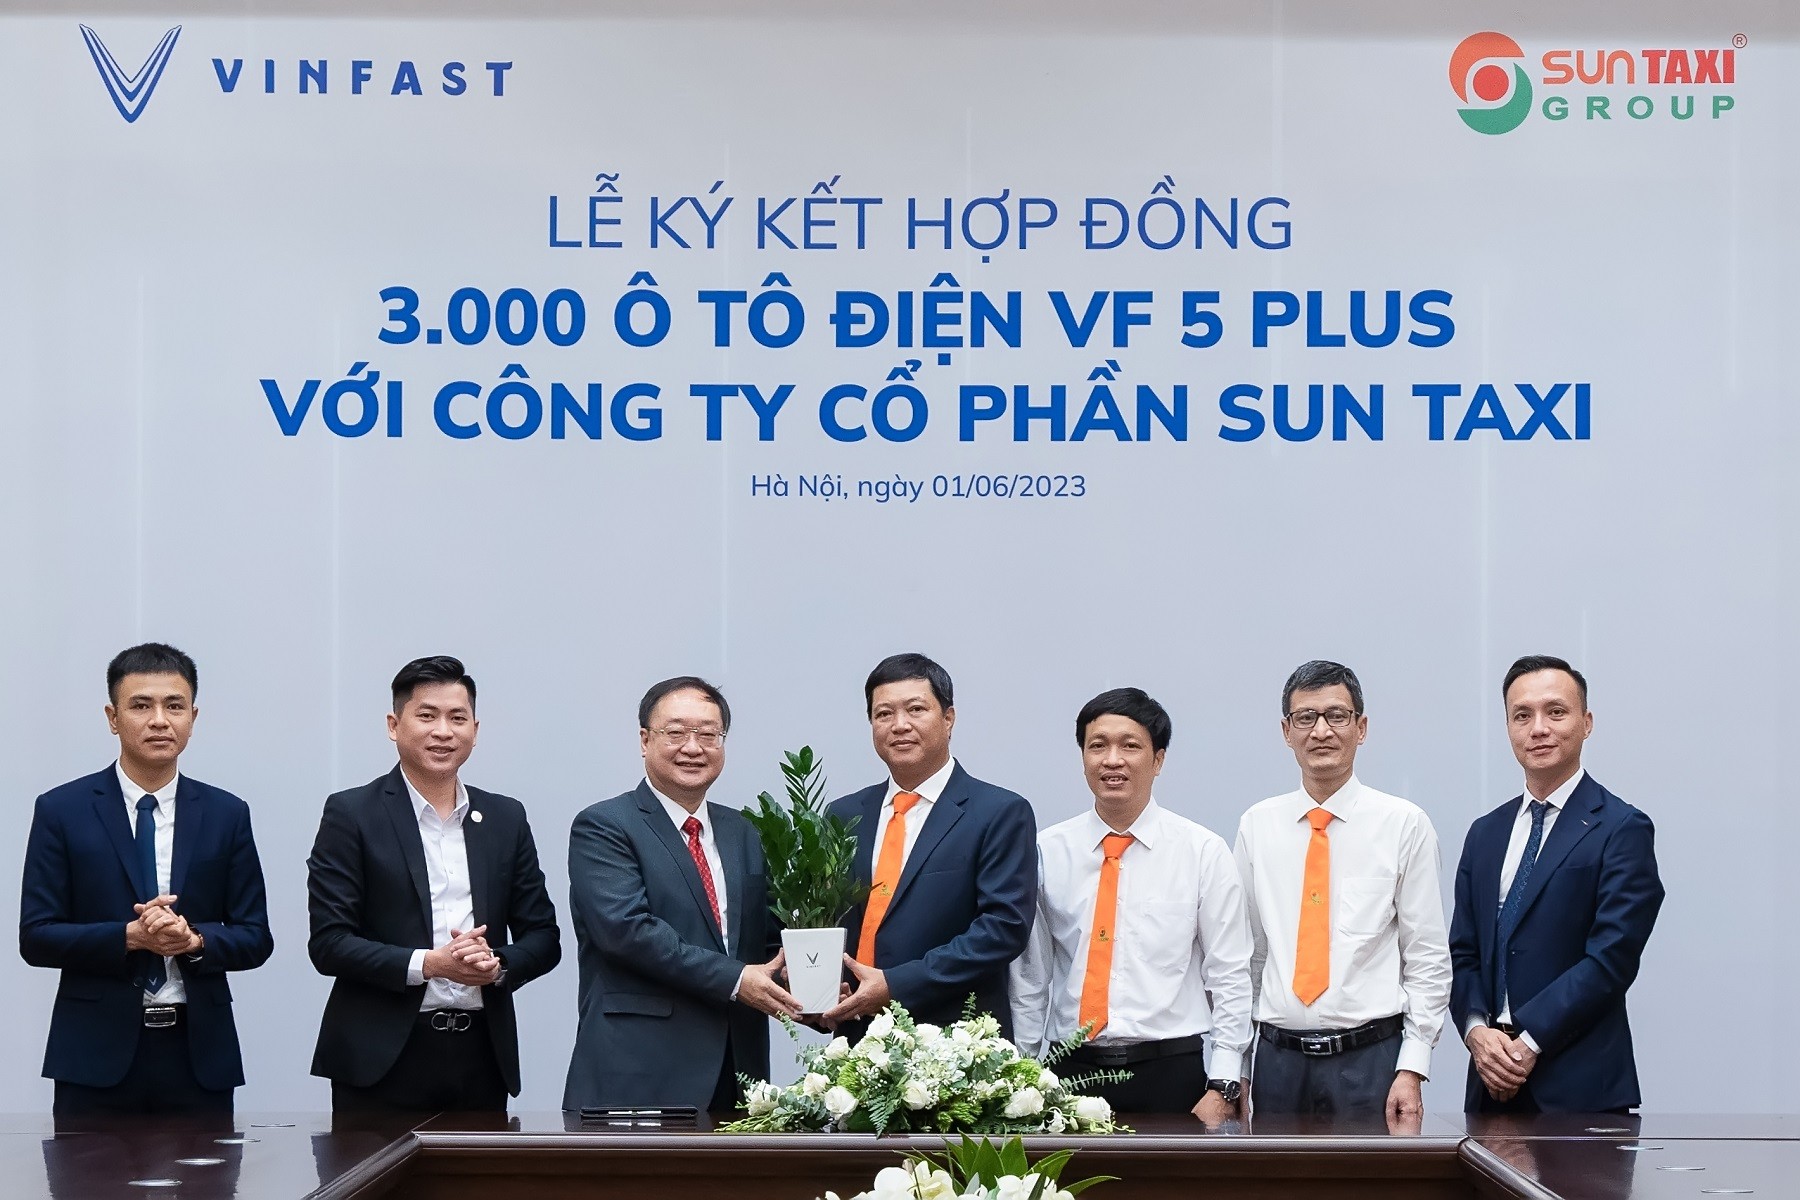 Sun Taxi mua 3.000 xe điện VinFast VF 5 Plus, thúc đẩy cuộc cách mạng giao thông xanh tại Việt Nam ảnh 2